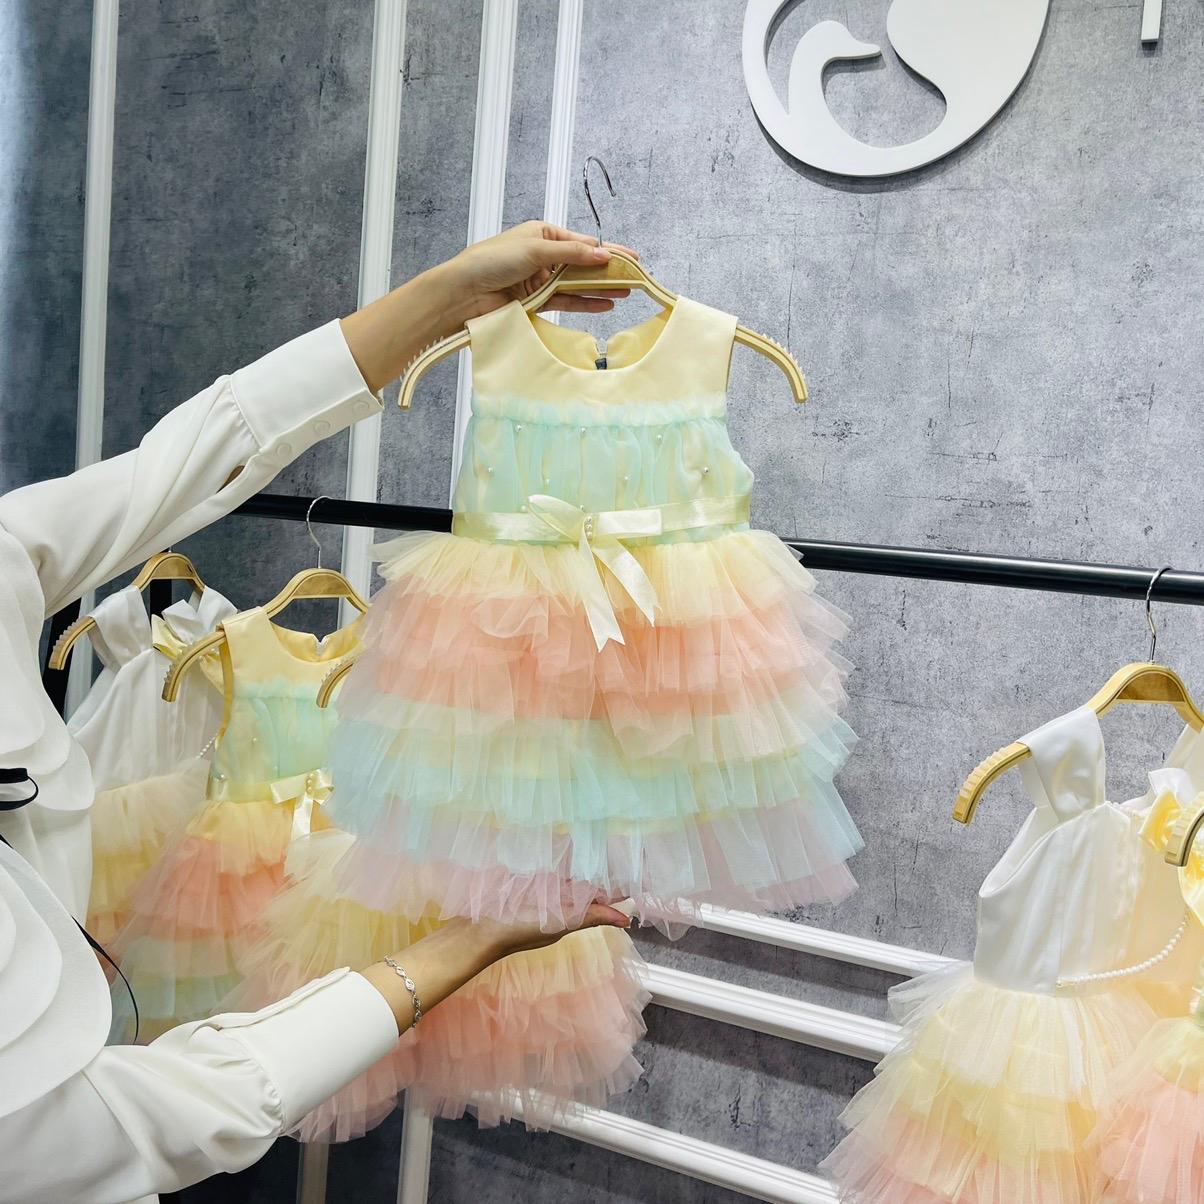 Đã xong - E Cần Mua Váy Dự Tiệc Cho Cho Bé Gai 5 Tuoi (26kg_ 1m20)a. |  Lamchame.com - Nguồn thông tin tin cậy dành cho cha mẹ